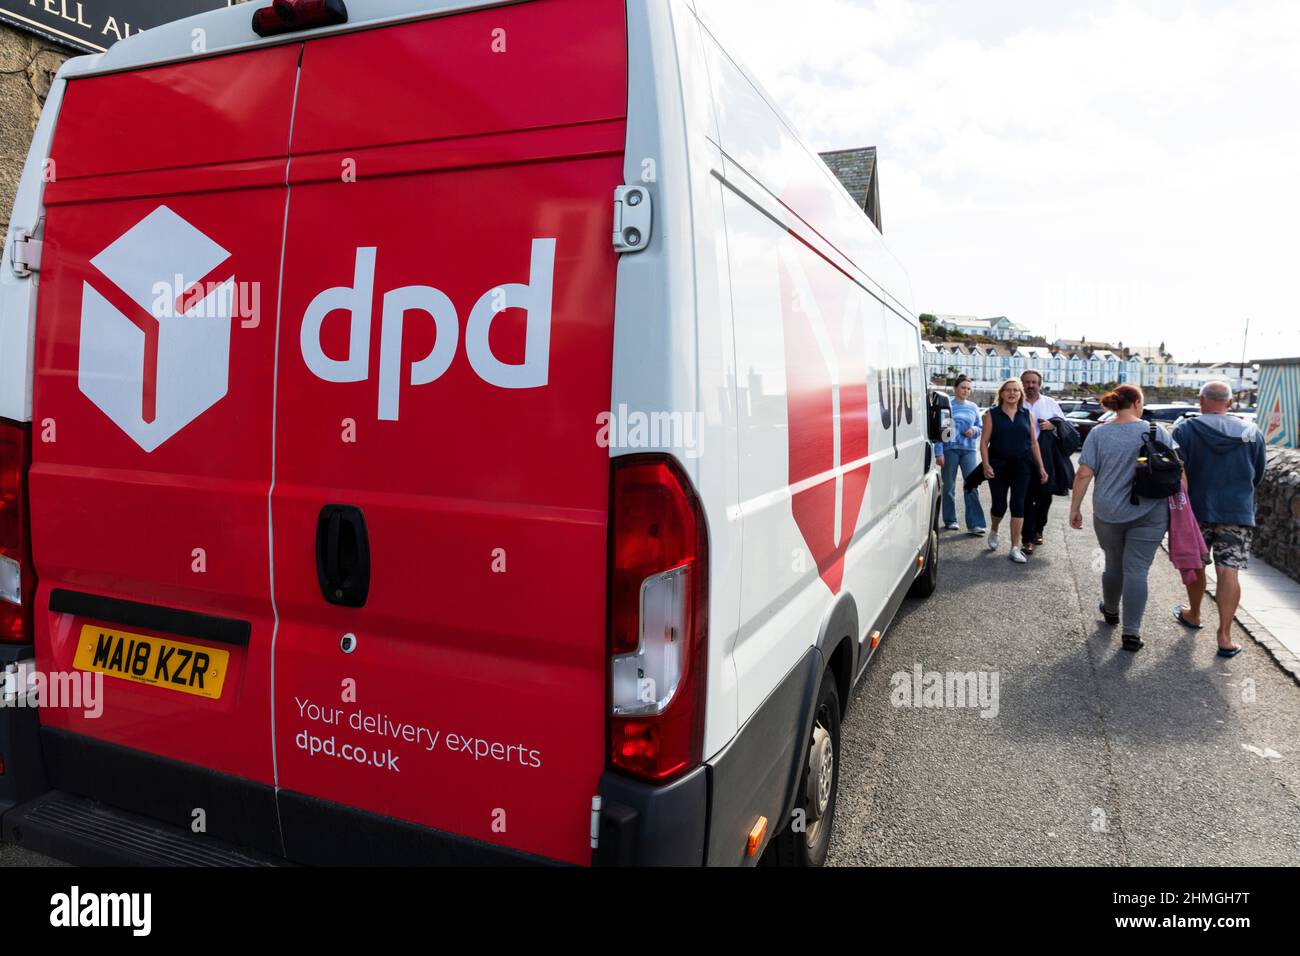 DPD, consegna DPD, furgone DPD, furgone DPD, cartello DPD, Logo DPD, veicolo DPD, simbolo DPD, consegna pacchi DPD, consegna, Logistica DPD, logistica, Foto Stock